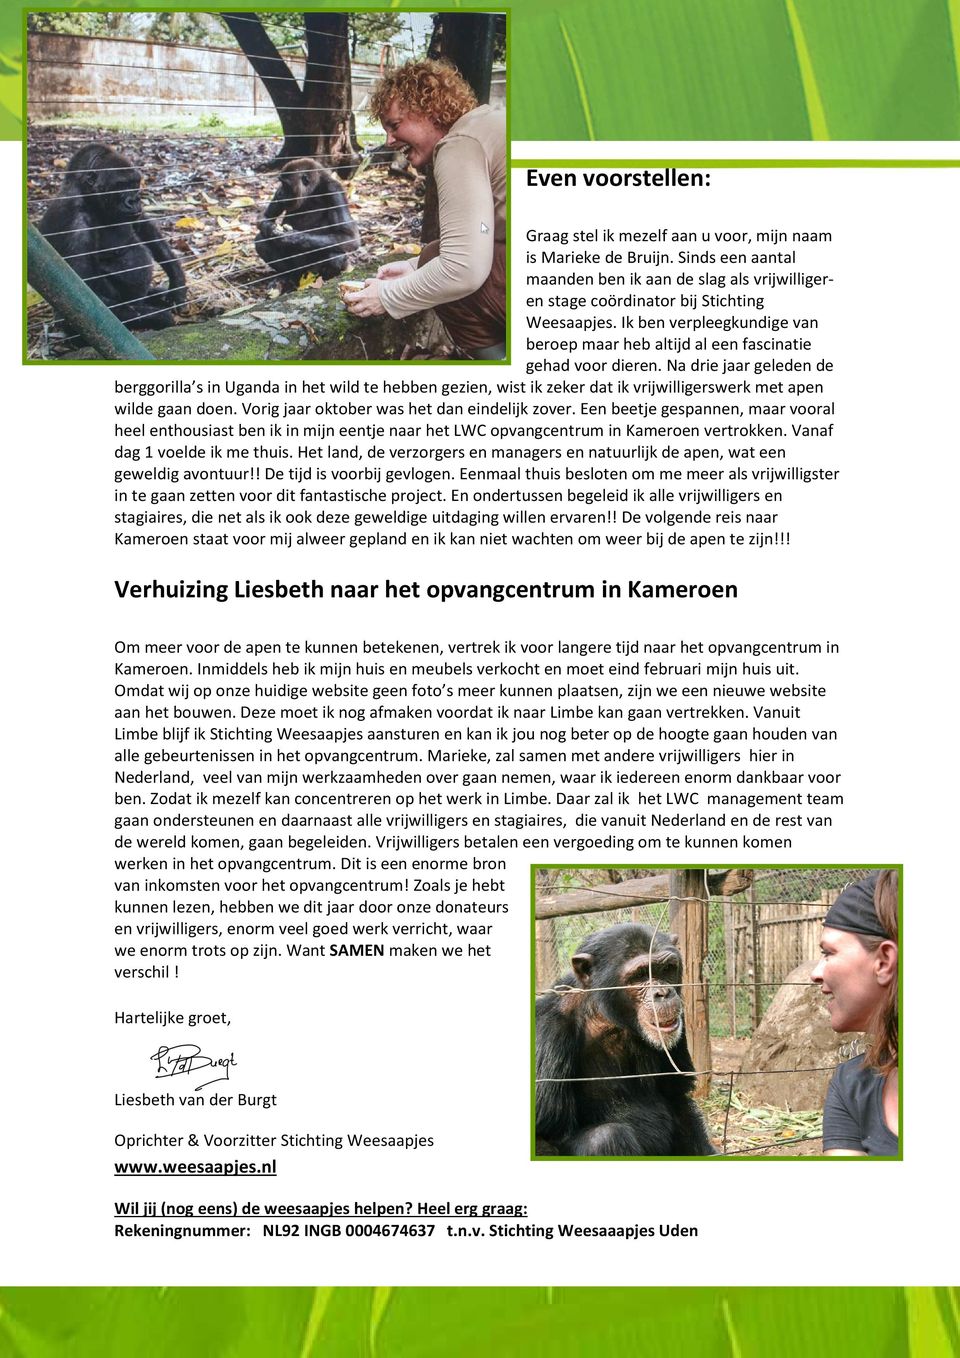 Na drie jaar geleden de berggorilla s in Uganda in het wild te hebben gezien, wist ik zeker dat ik vrijwilligerswerk met apen wilde gaan doen. Vorig jaar oktober was het dan eindelijk zover.